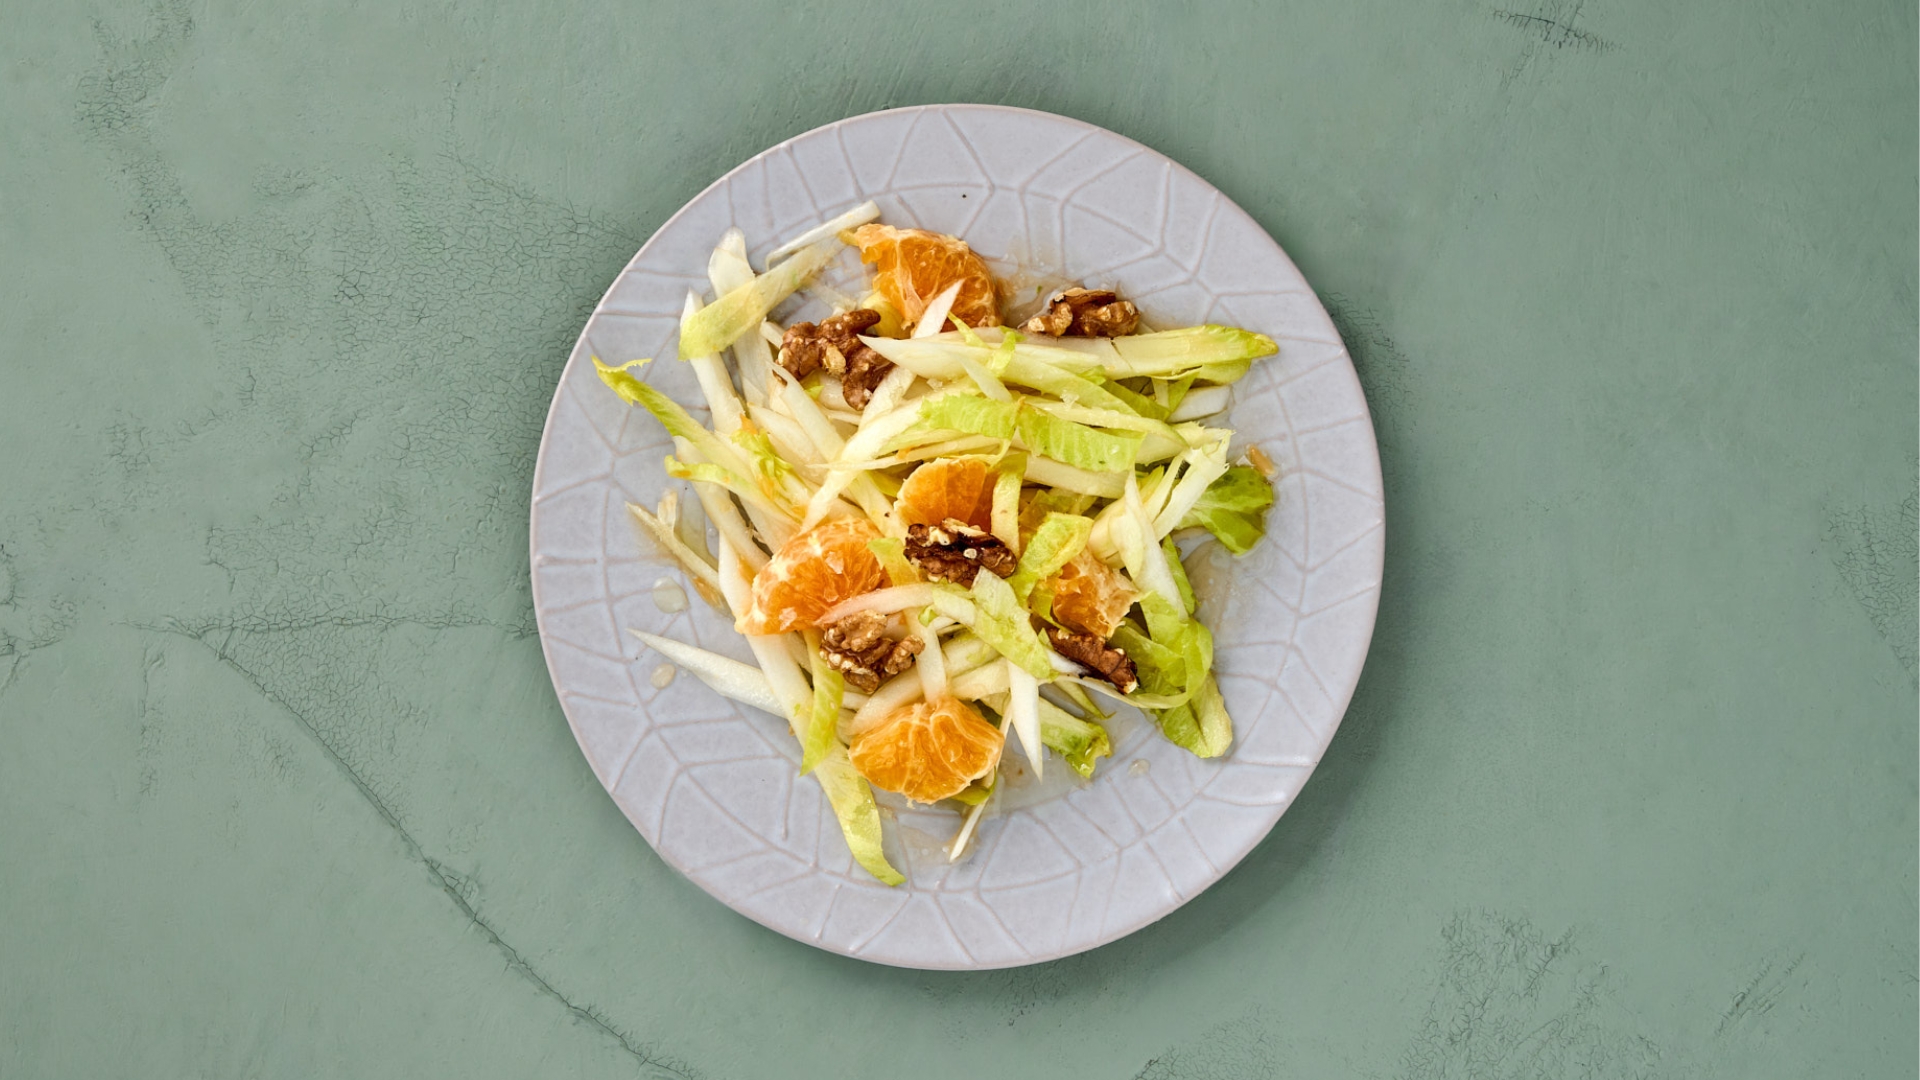 Chicorée-Salat mit Walnüssen und Mandarinen